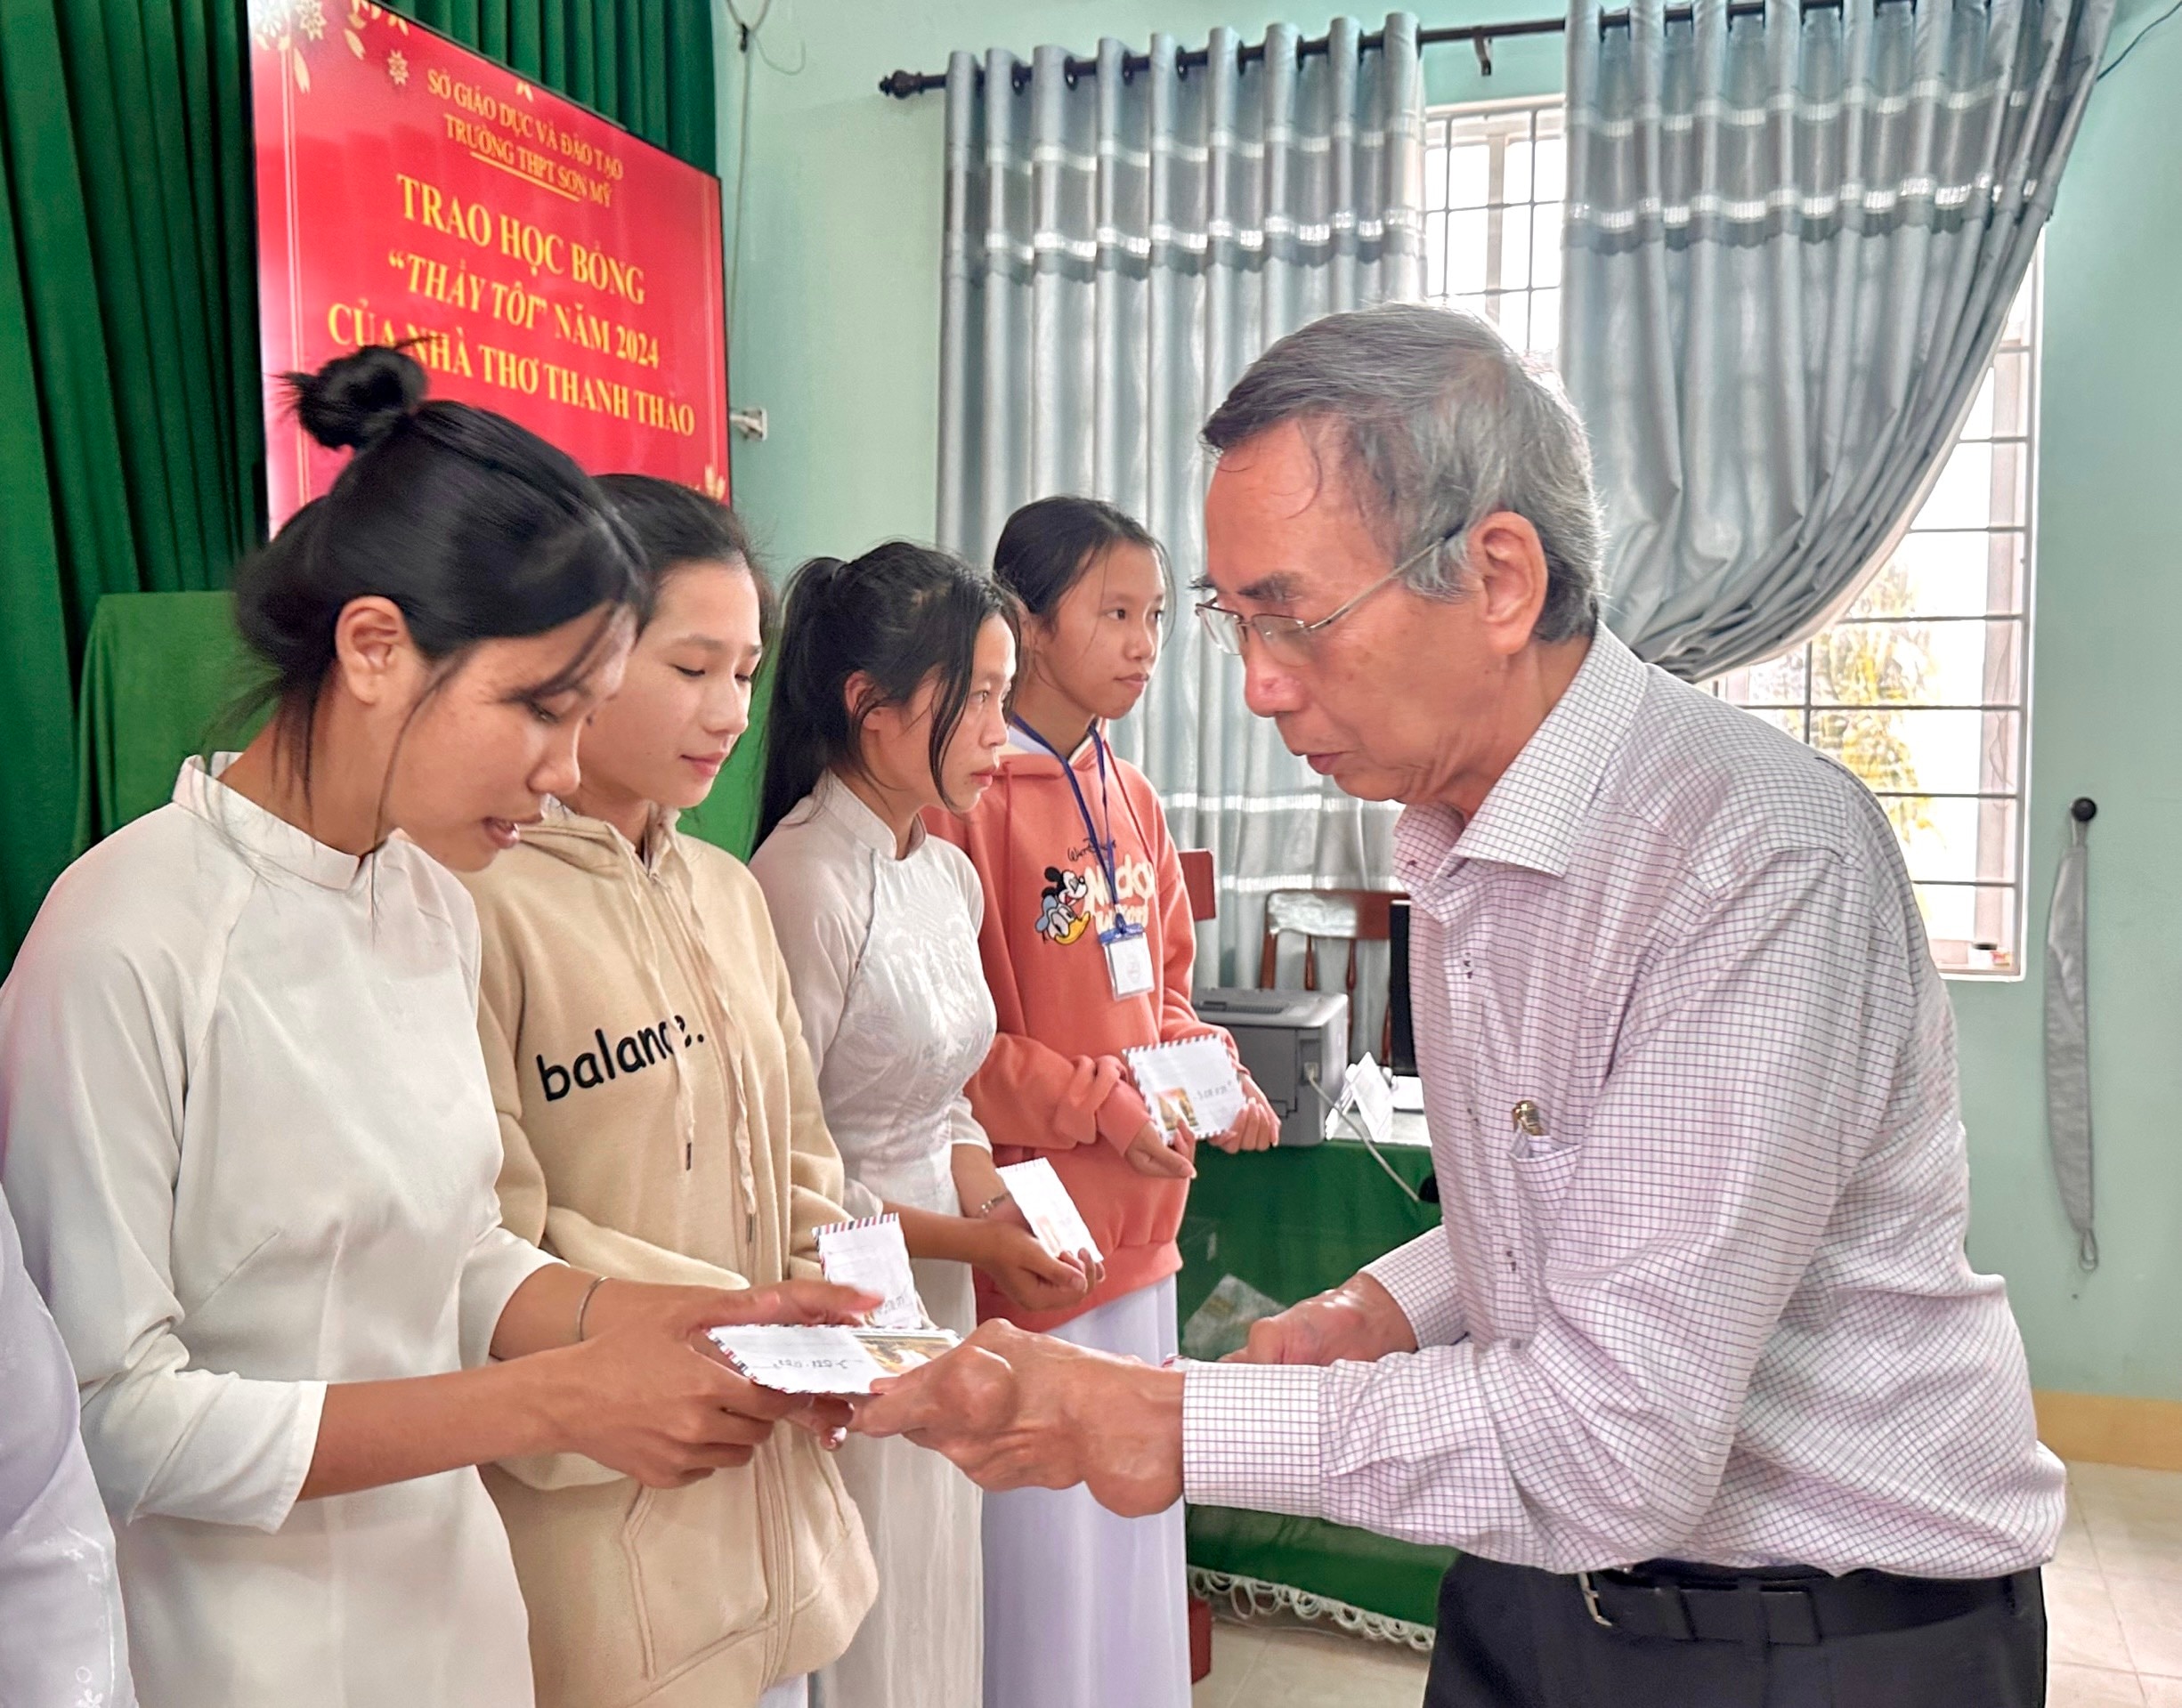 Nhà thơ Thanh Thảo trao học bổng 'Thầy tôi' cho học sinh Sơn Mỹ- Ảnh 1.